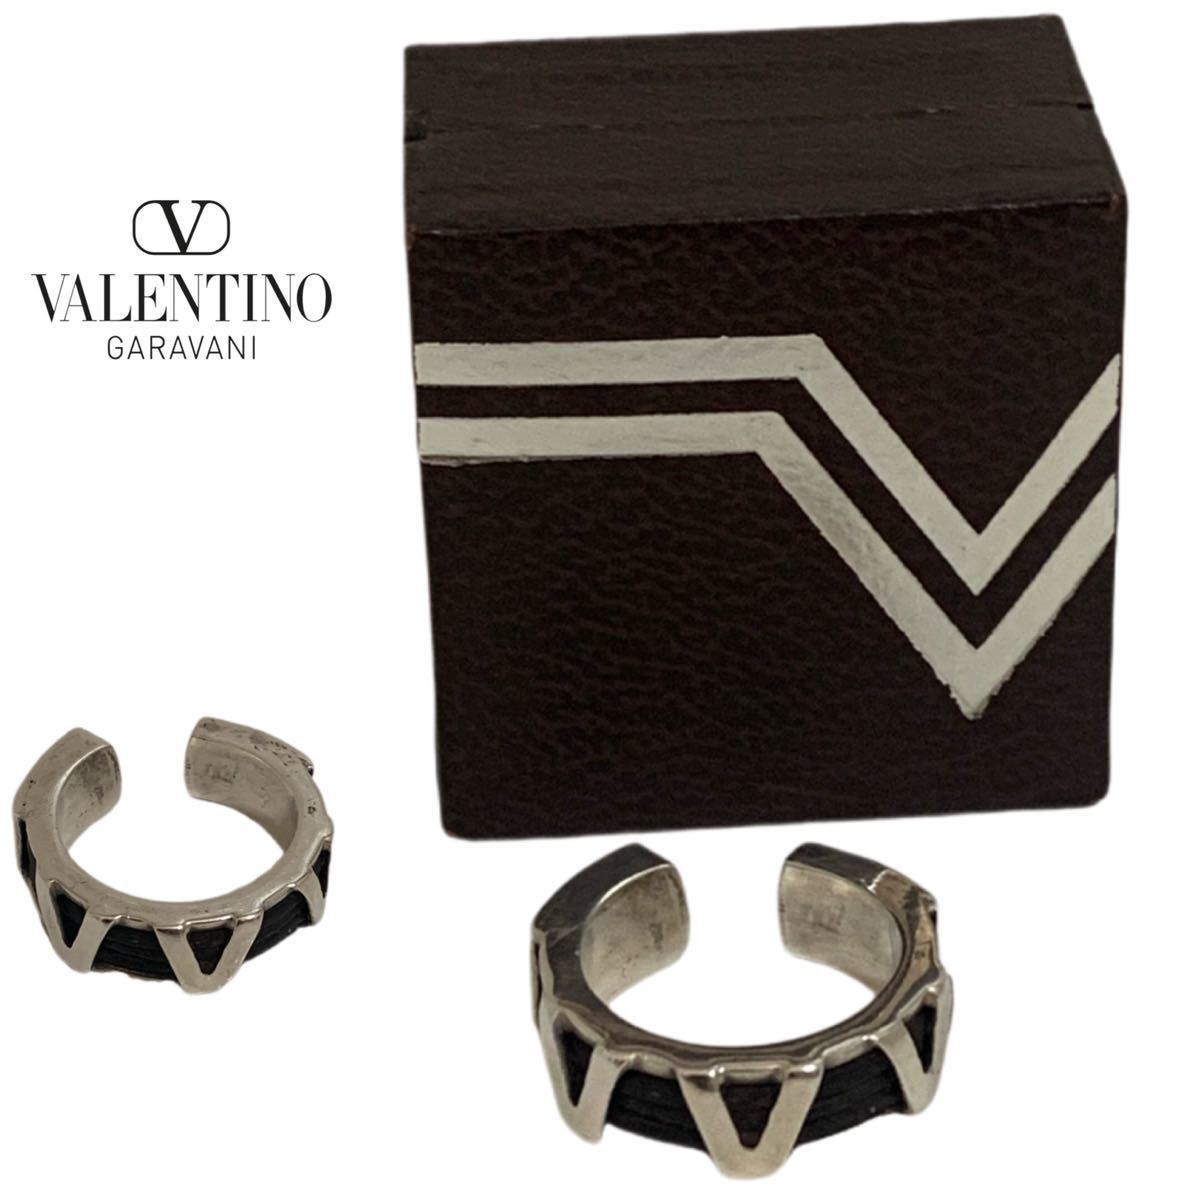 VALENTINO VINTAGE VALENTINO GARAVANI ヴァレンティノ ガラヴァーニ ヴィンテージ SILVER 925 レザー装飾 Vロゴシルバーリング アーカイブ